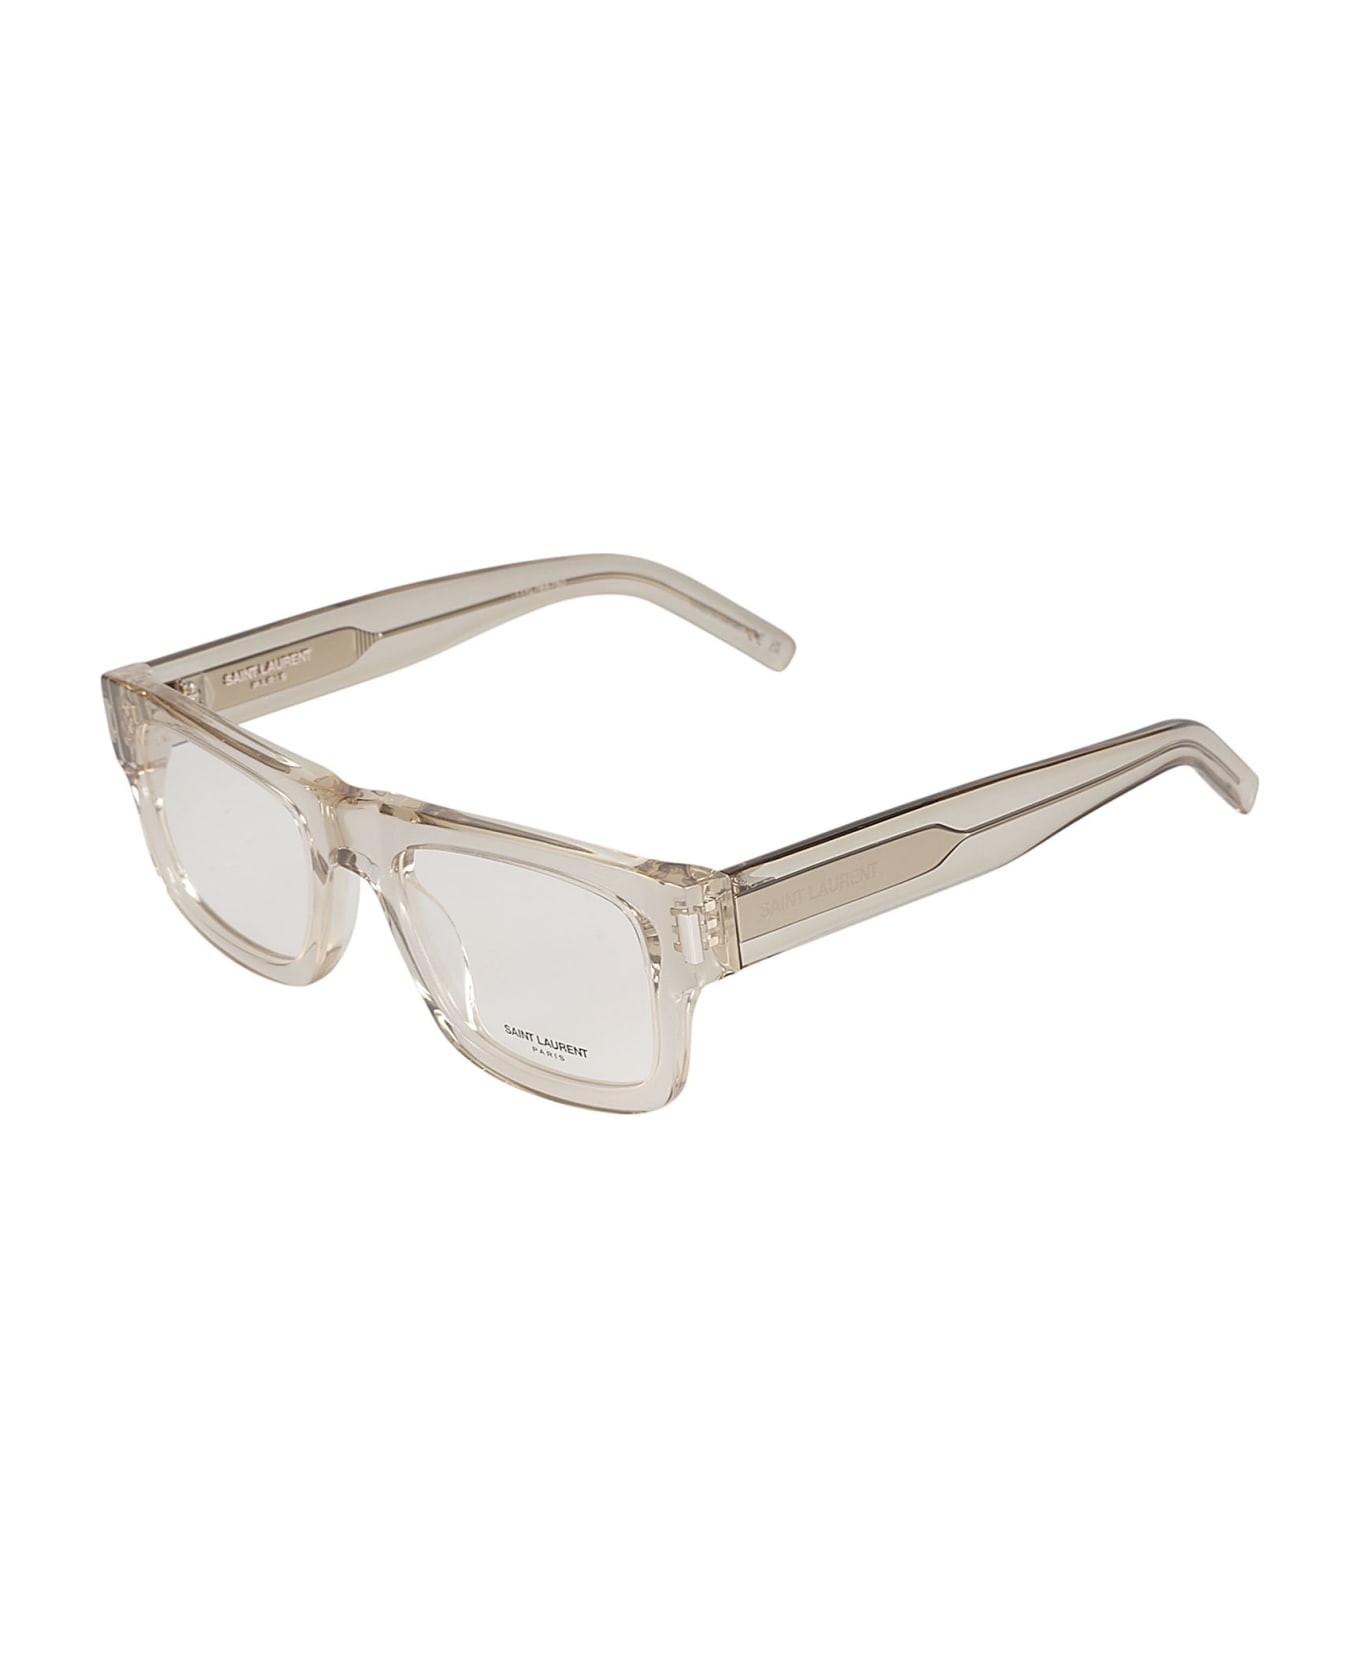 Saint Laurent Eyewear Square Frame Glasses - Beige/Transparent